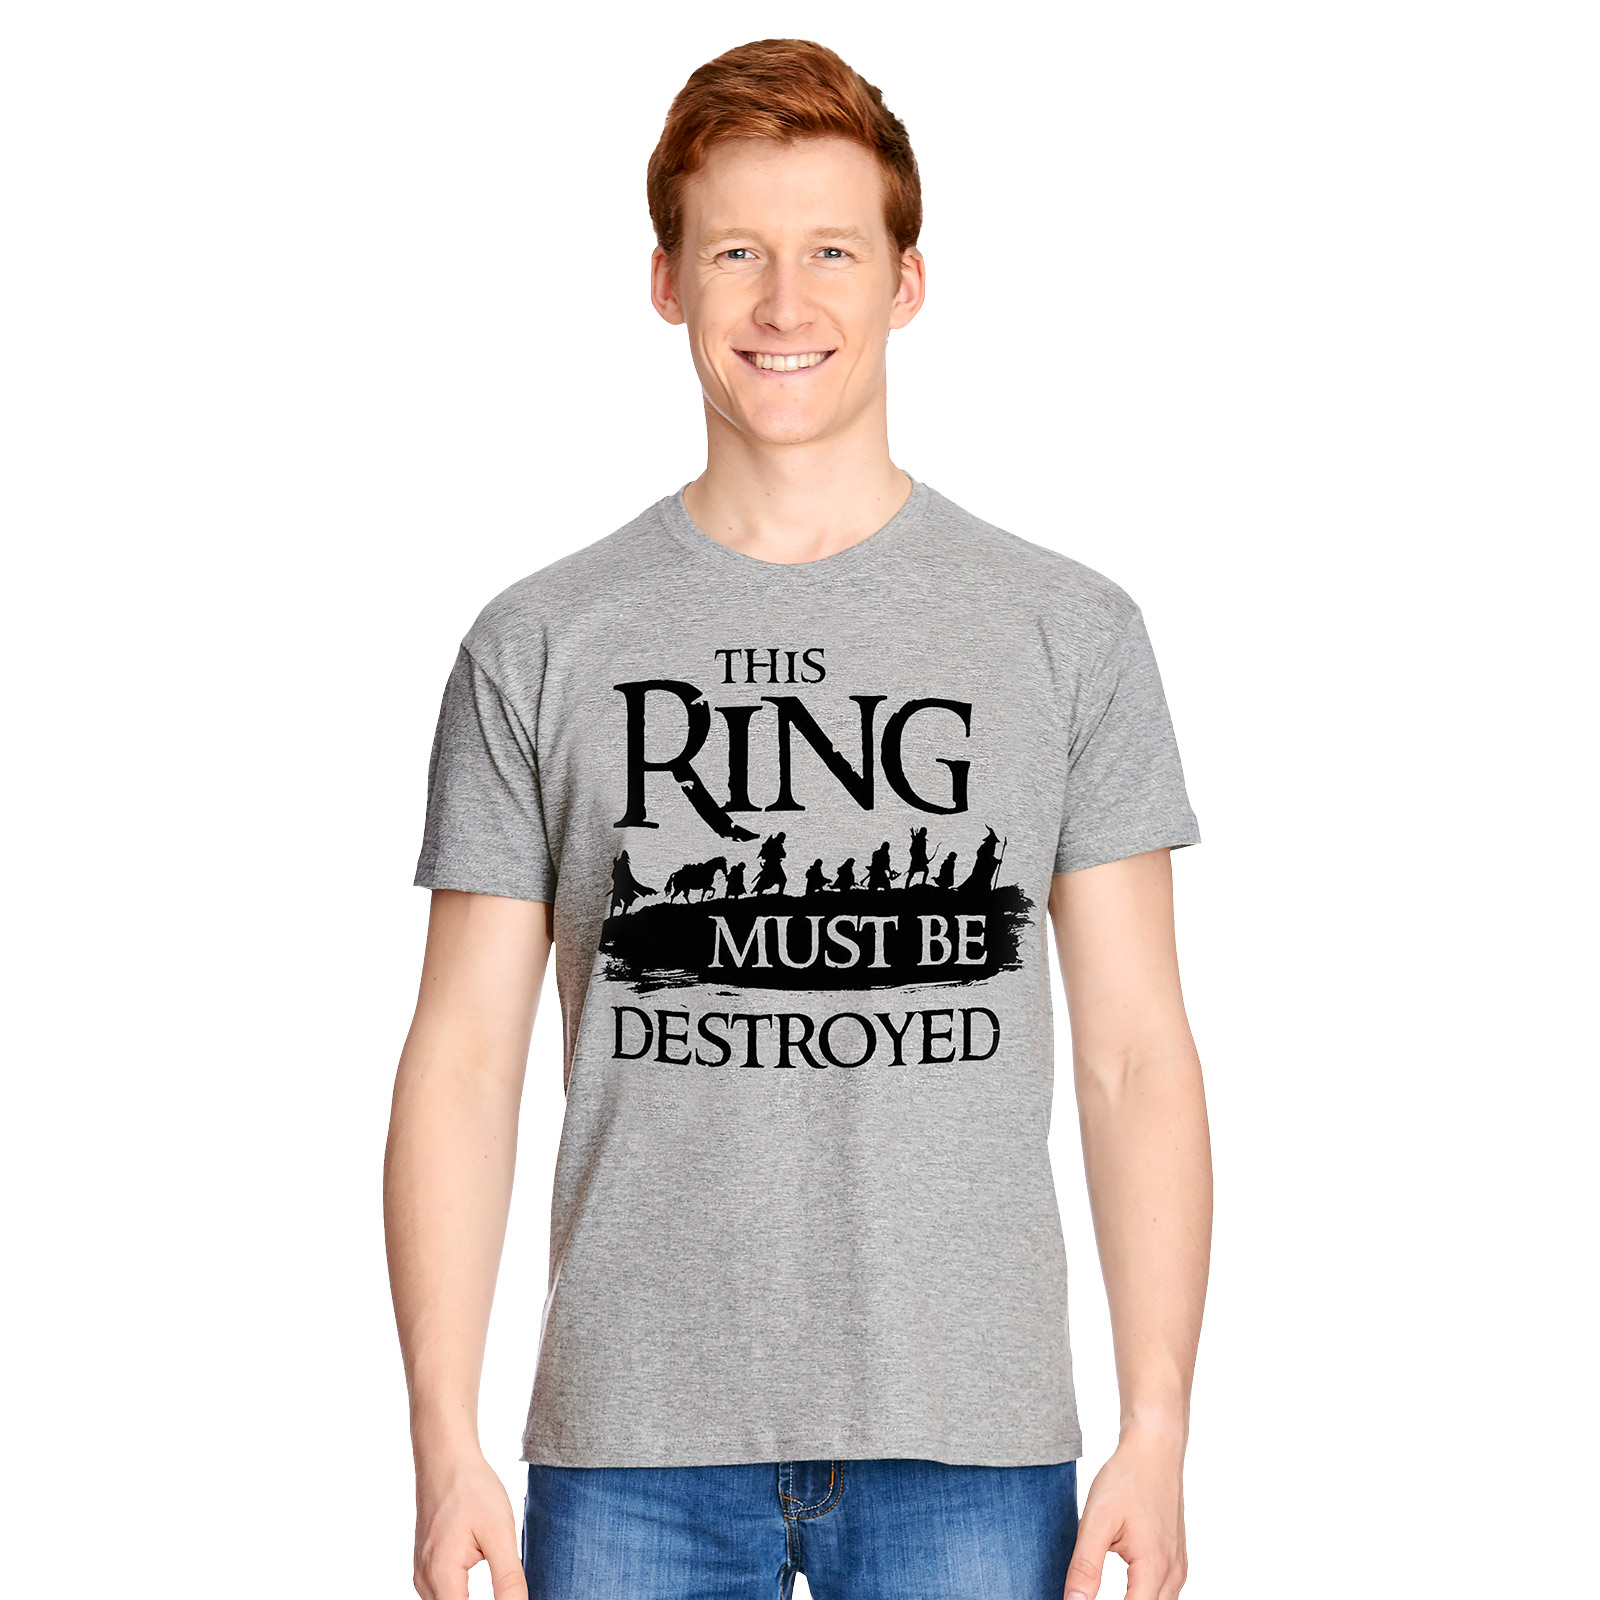 Herr der Ringe - Gefährten T-Shirt grau